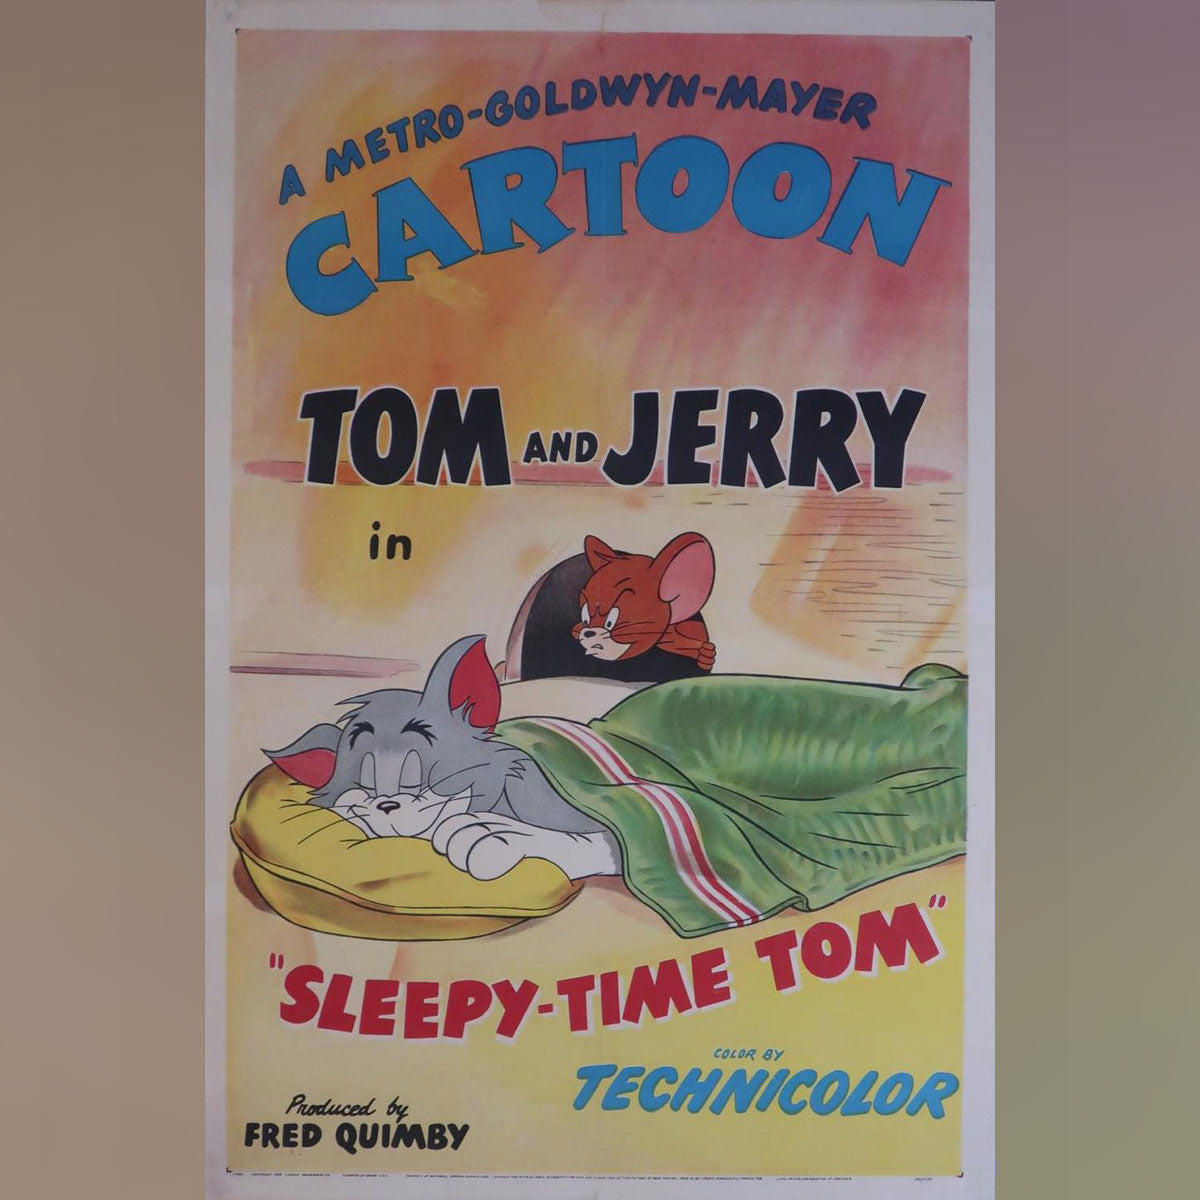 Tom And Jerry: Sleepy-Time Tom (1951)